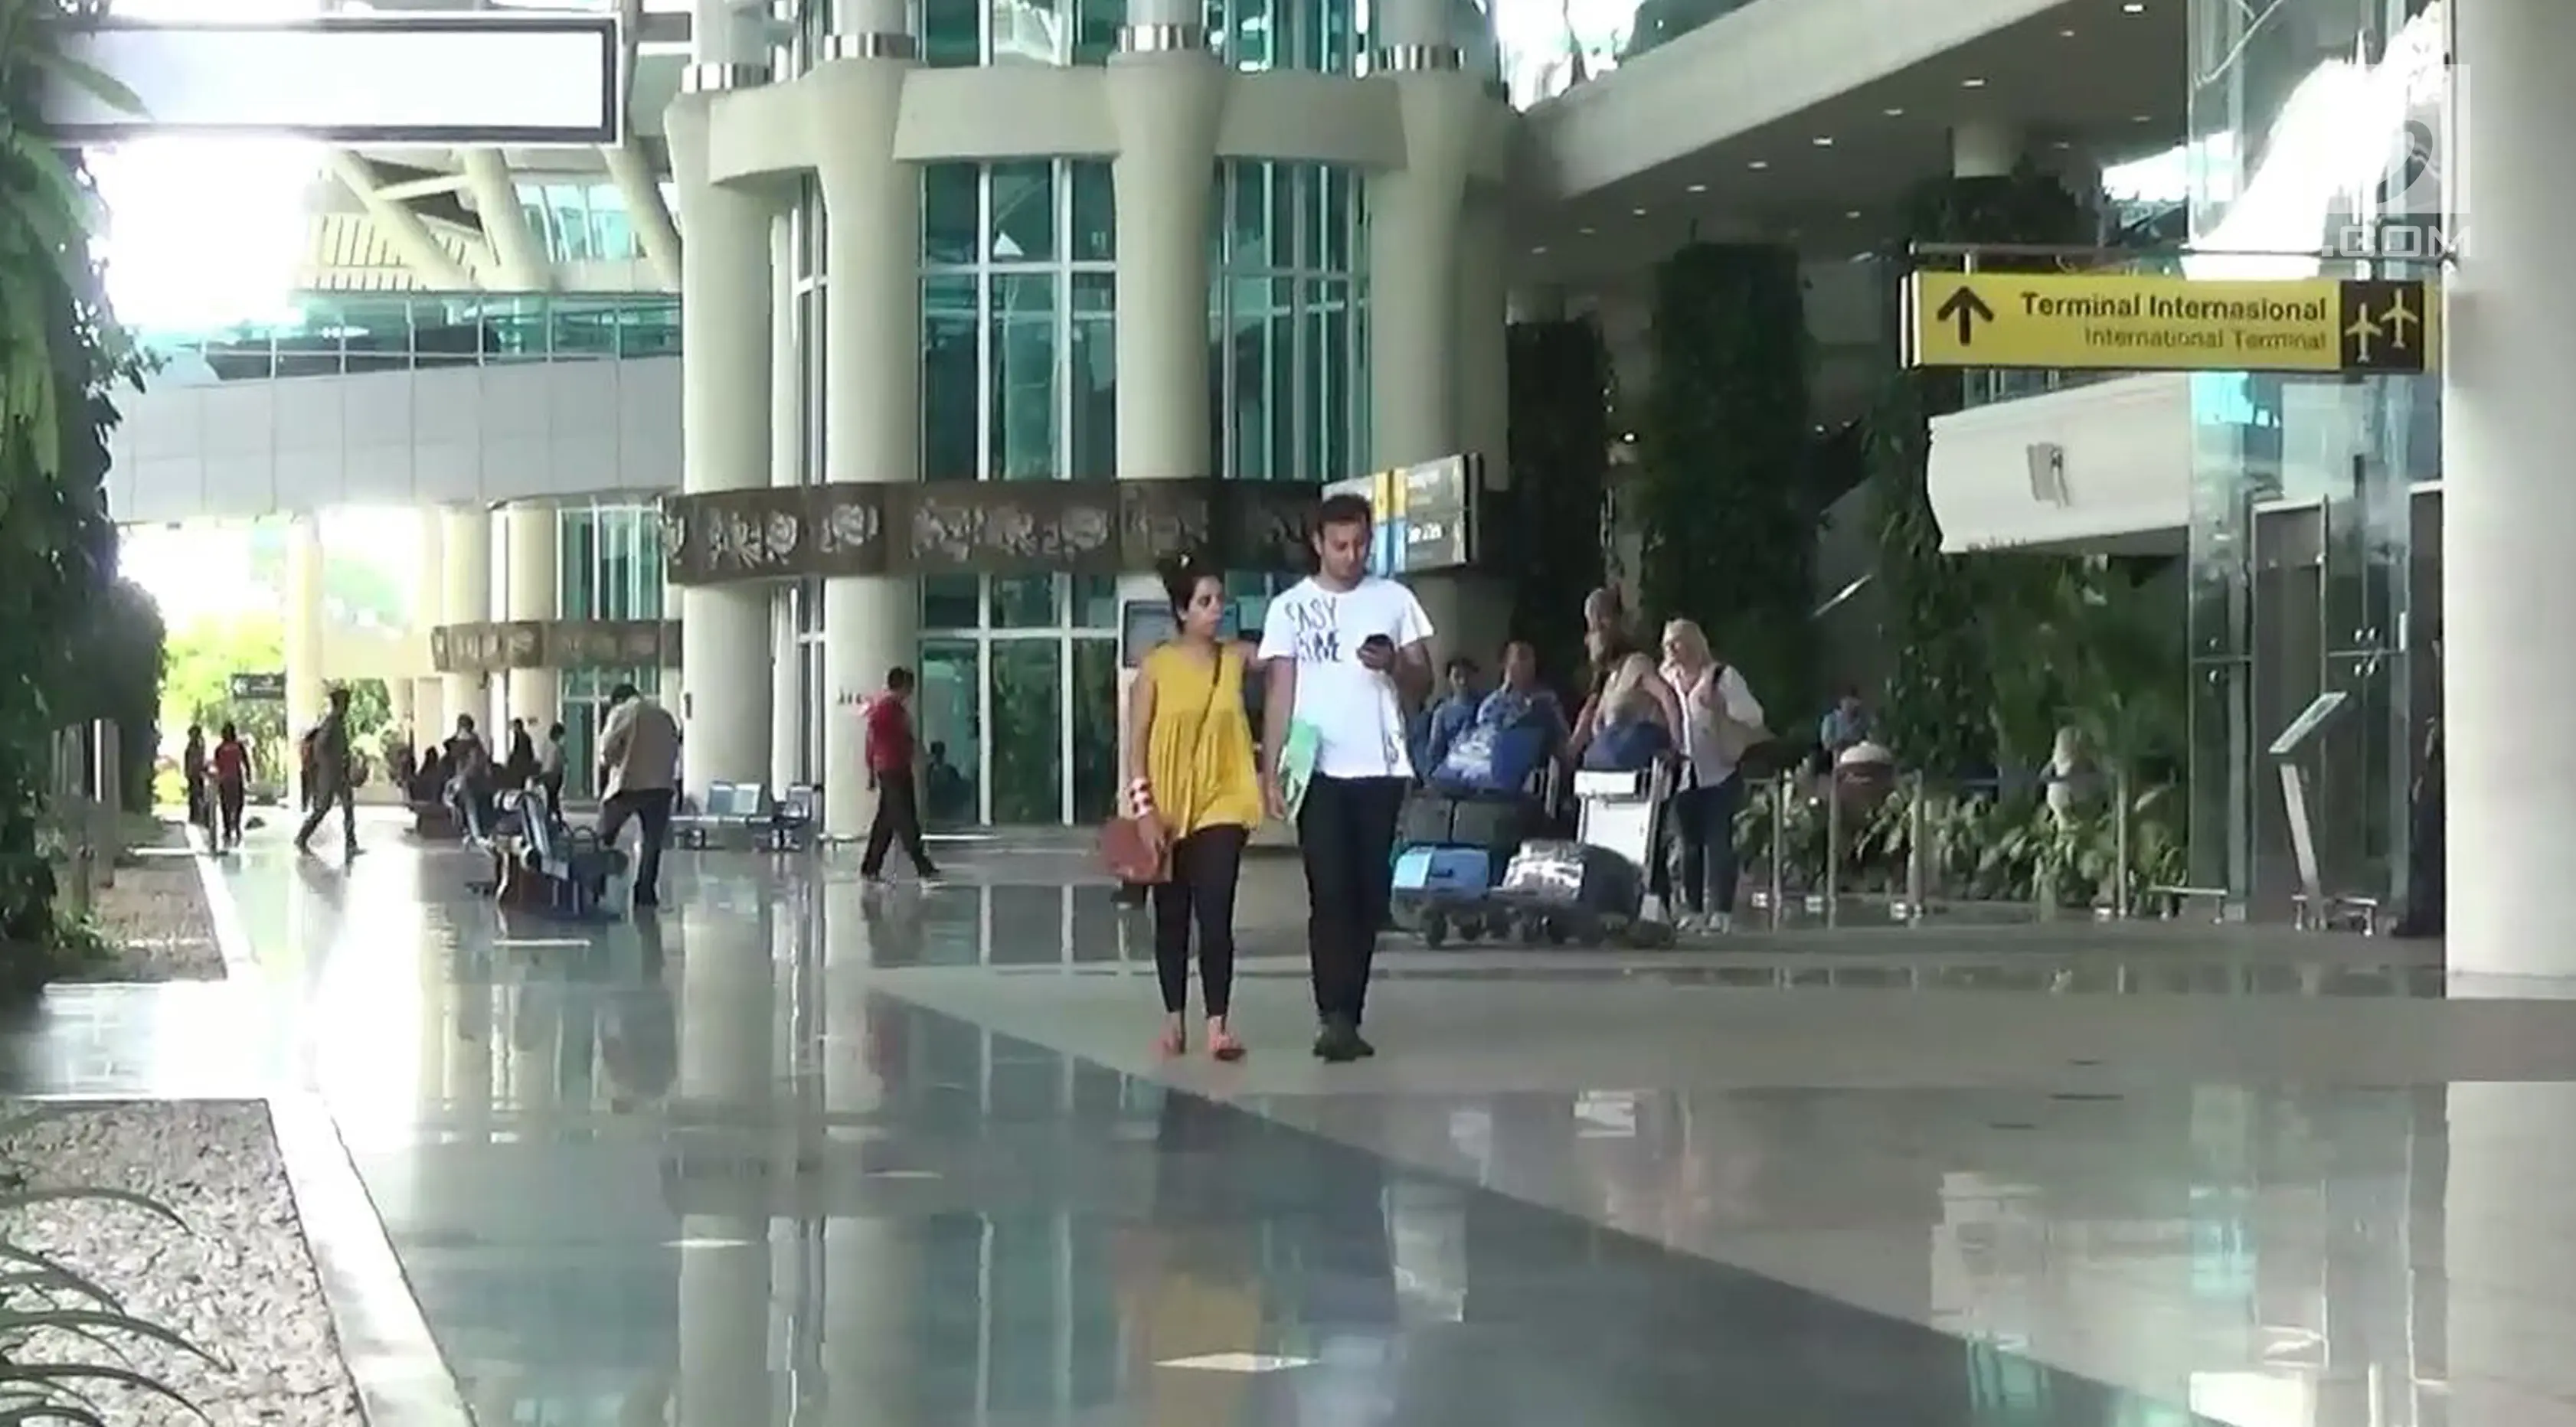 Warga negara asing melintas di Terminal Internasional Bandara Ngurah Rai, Bali, Selasa (28/11). Erupsi Gunung Agung yang masih terjadi menyebabkan Bandara Ngurah Rai ditutup 24 jam ke depan hingga 29 November 2017. (Liputan6.com/Dewi Divianta)